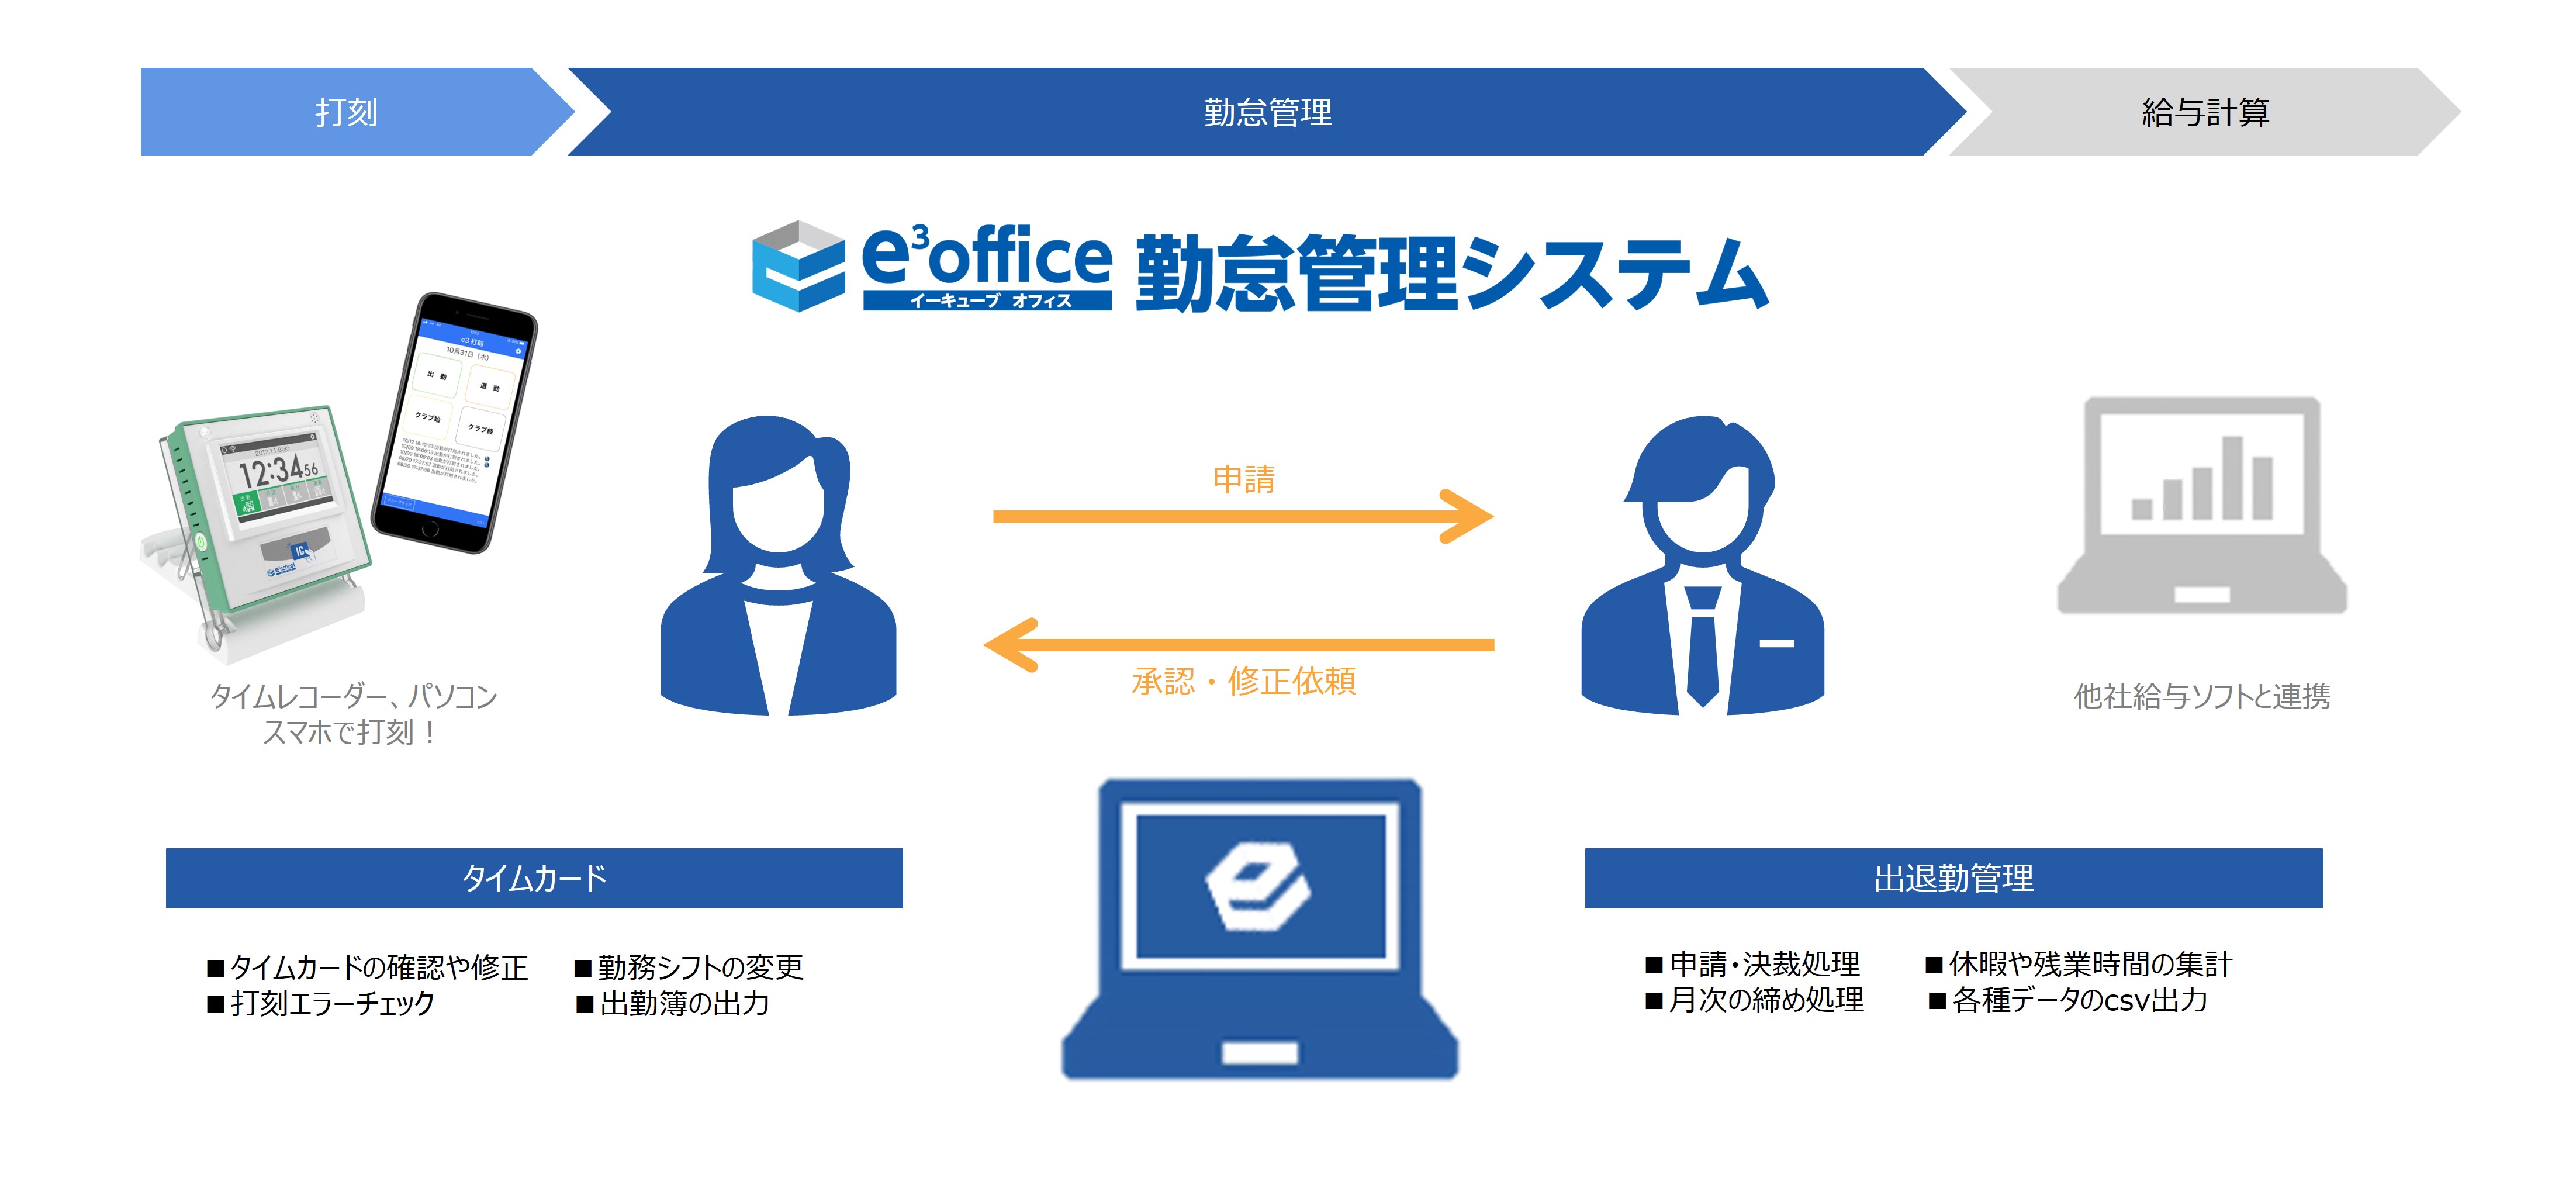 e³office 勤怠管理システムの運用イメージ図